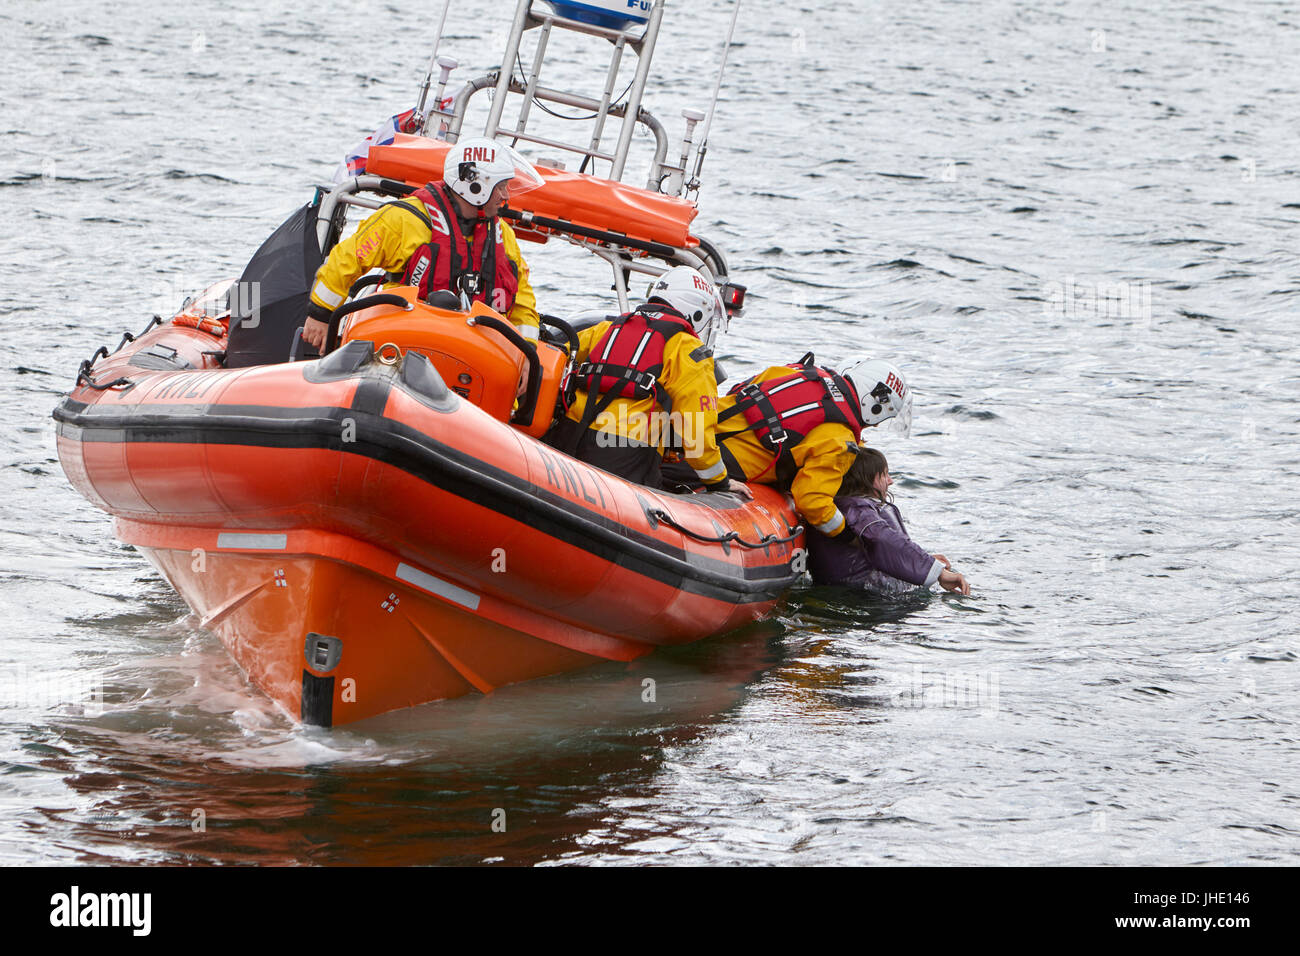 Bangor salvavidas rnli jessie hillyard en demostración de seguridad recuperar el hombre del Mar de Irlanda del Norte Foto de stock